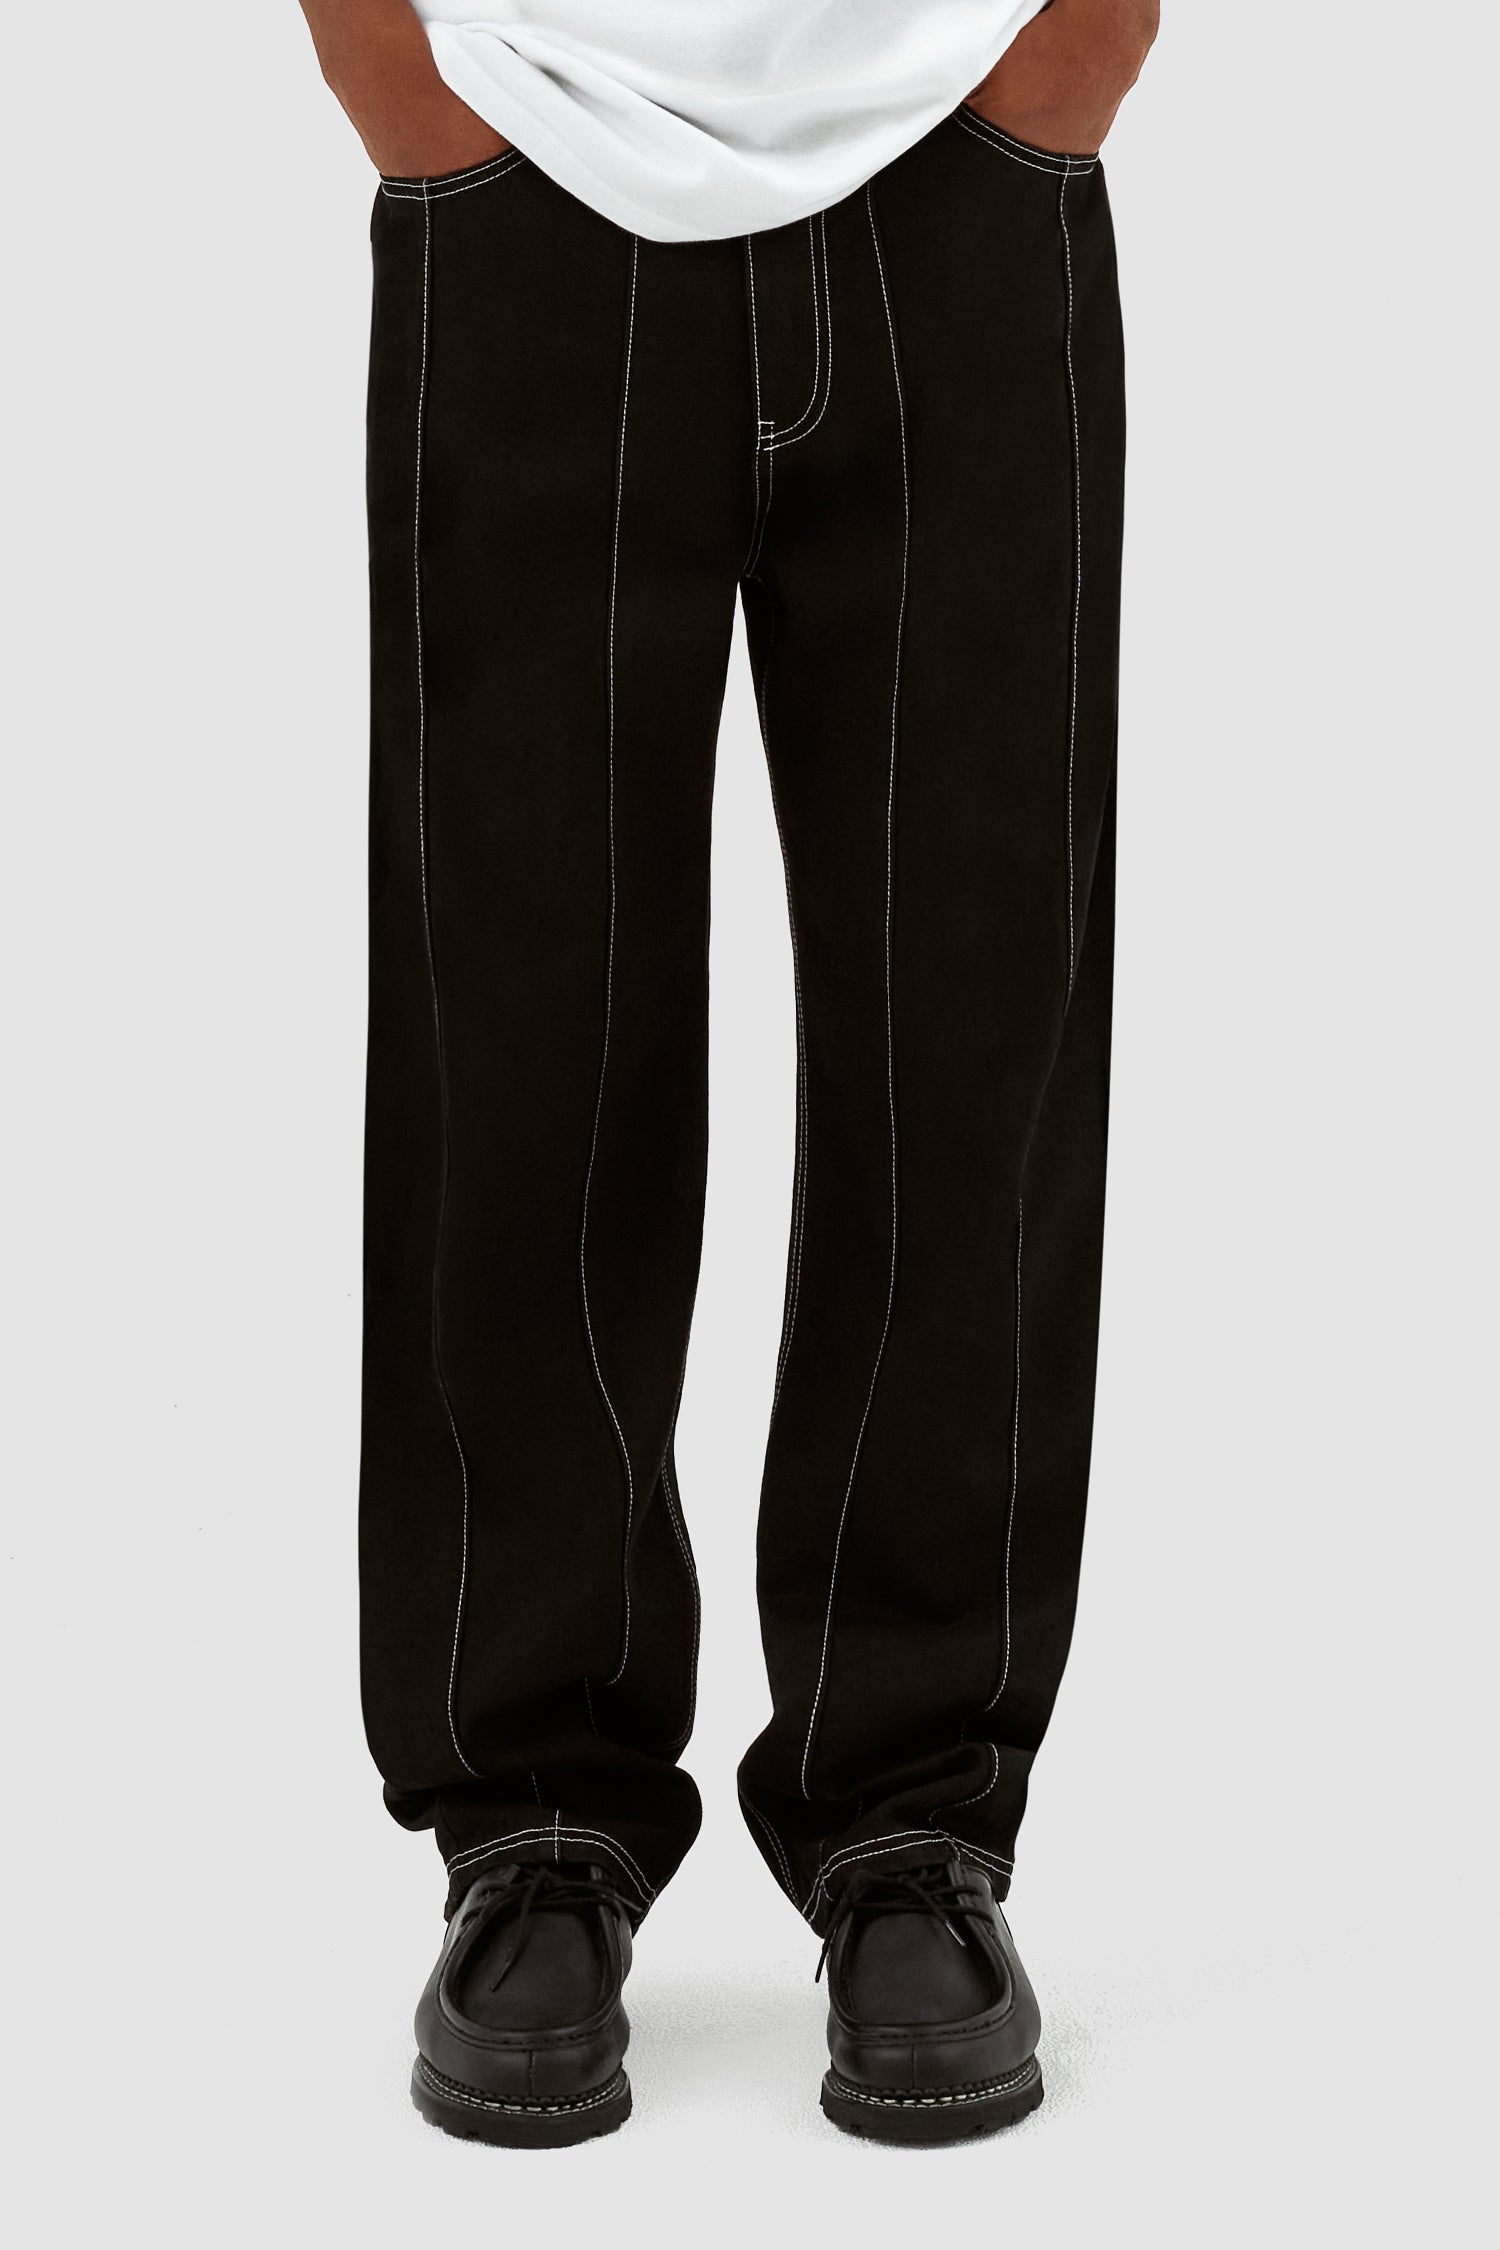 Pantalon Poage Detail - Noir